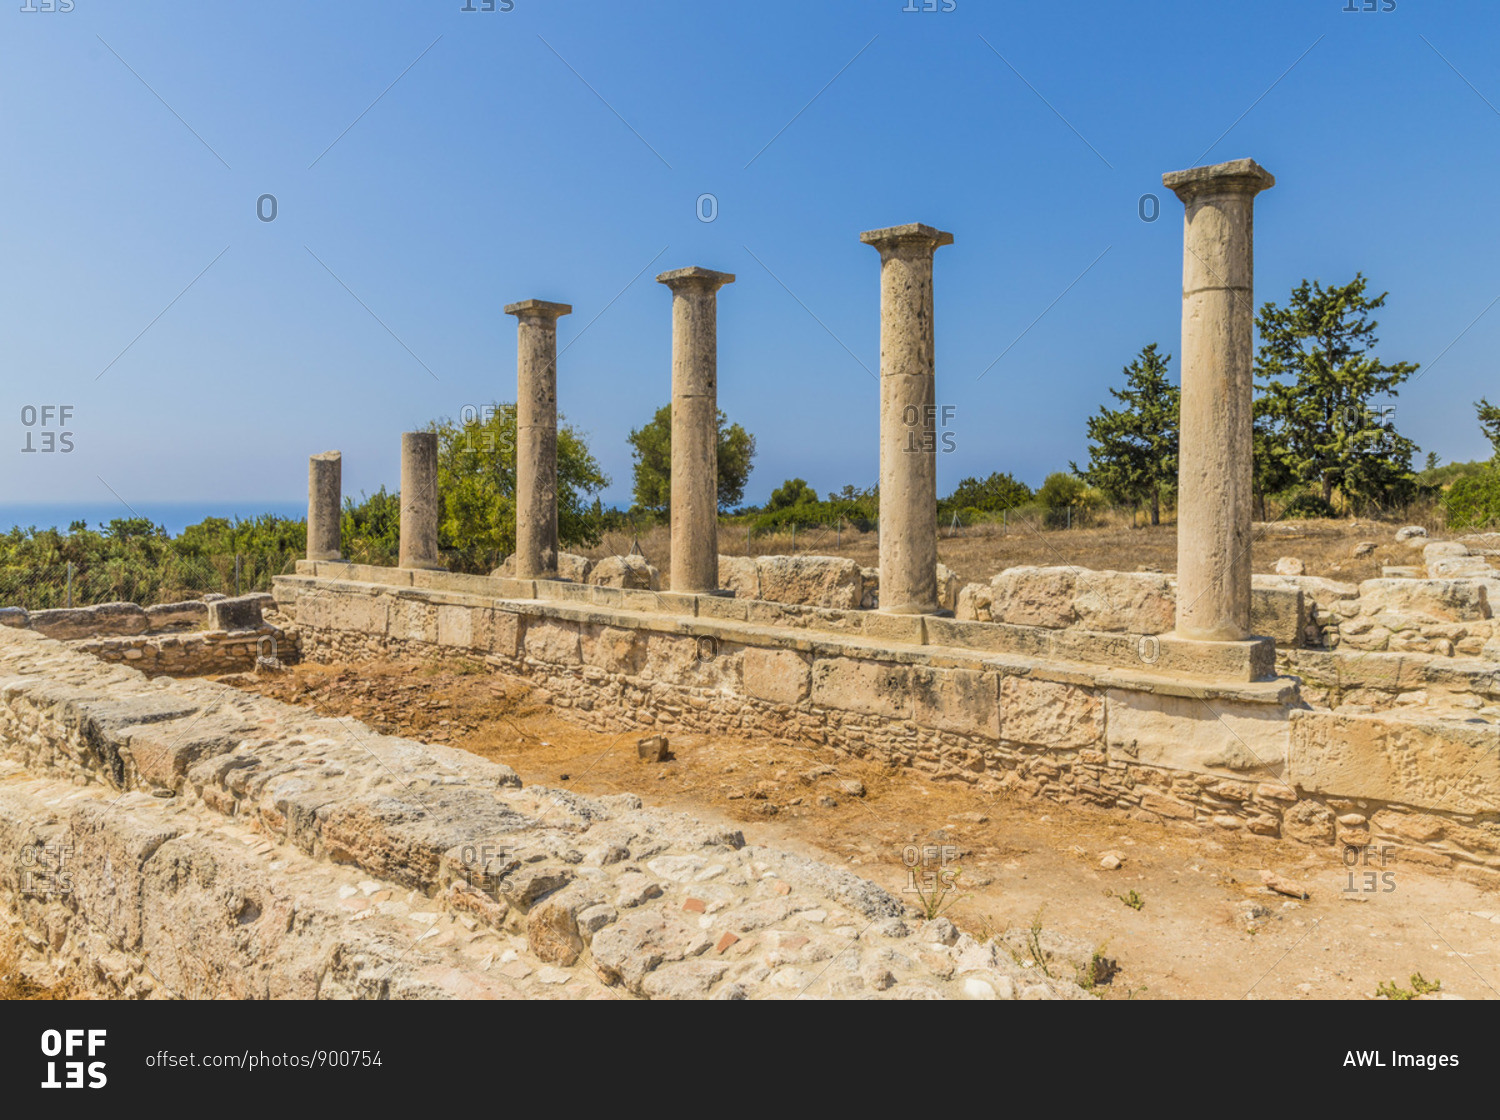 The Sanctuary of Apollo Hylates, Kourion, Limassol, Cyprus